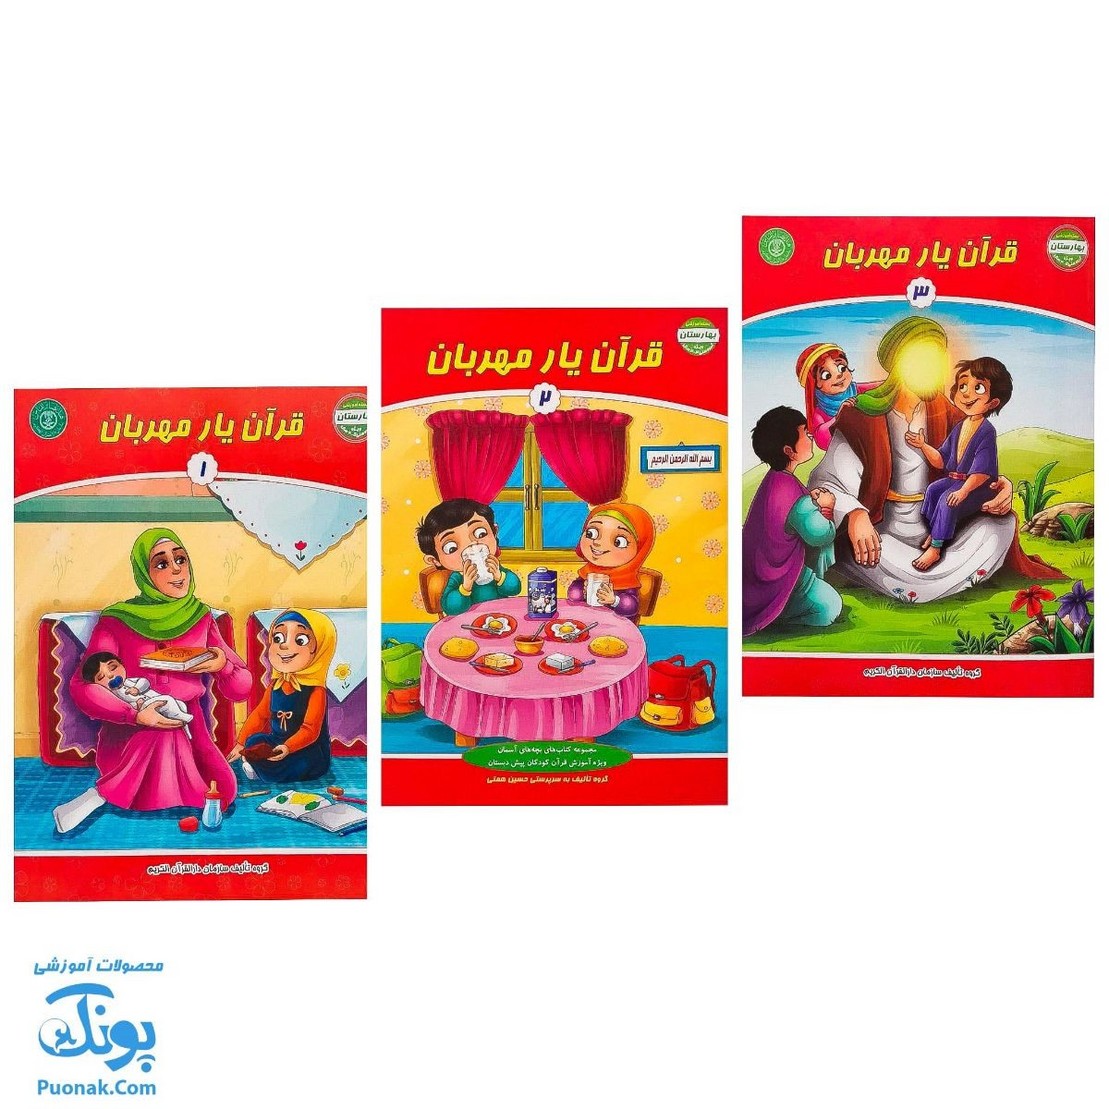 کتاب قرآن یار مهربان مجموعه ۳ جلدی (مجموعه کتاب های بچه های آسمان ویژه آموزش قرآن کودکان پیش دبستان) - محصولات آموزشی پونک